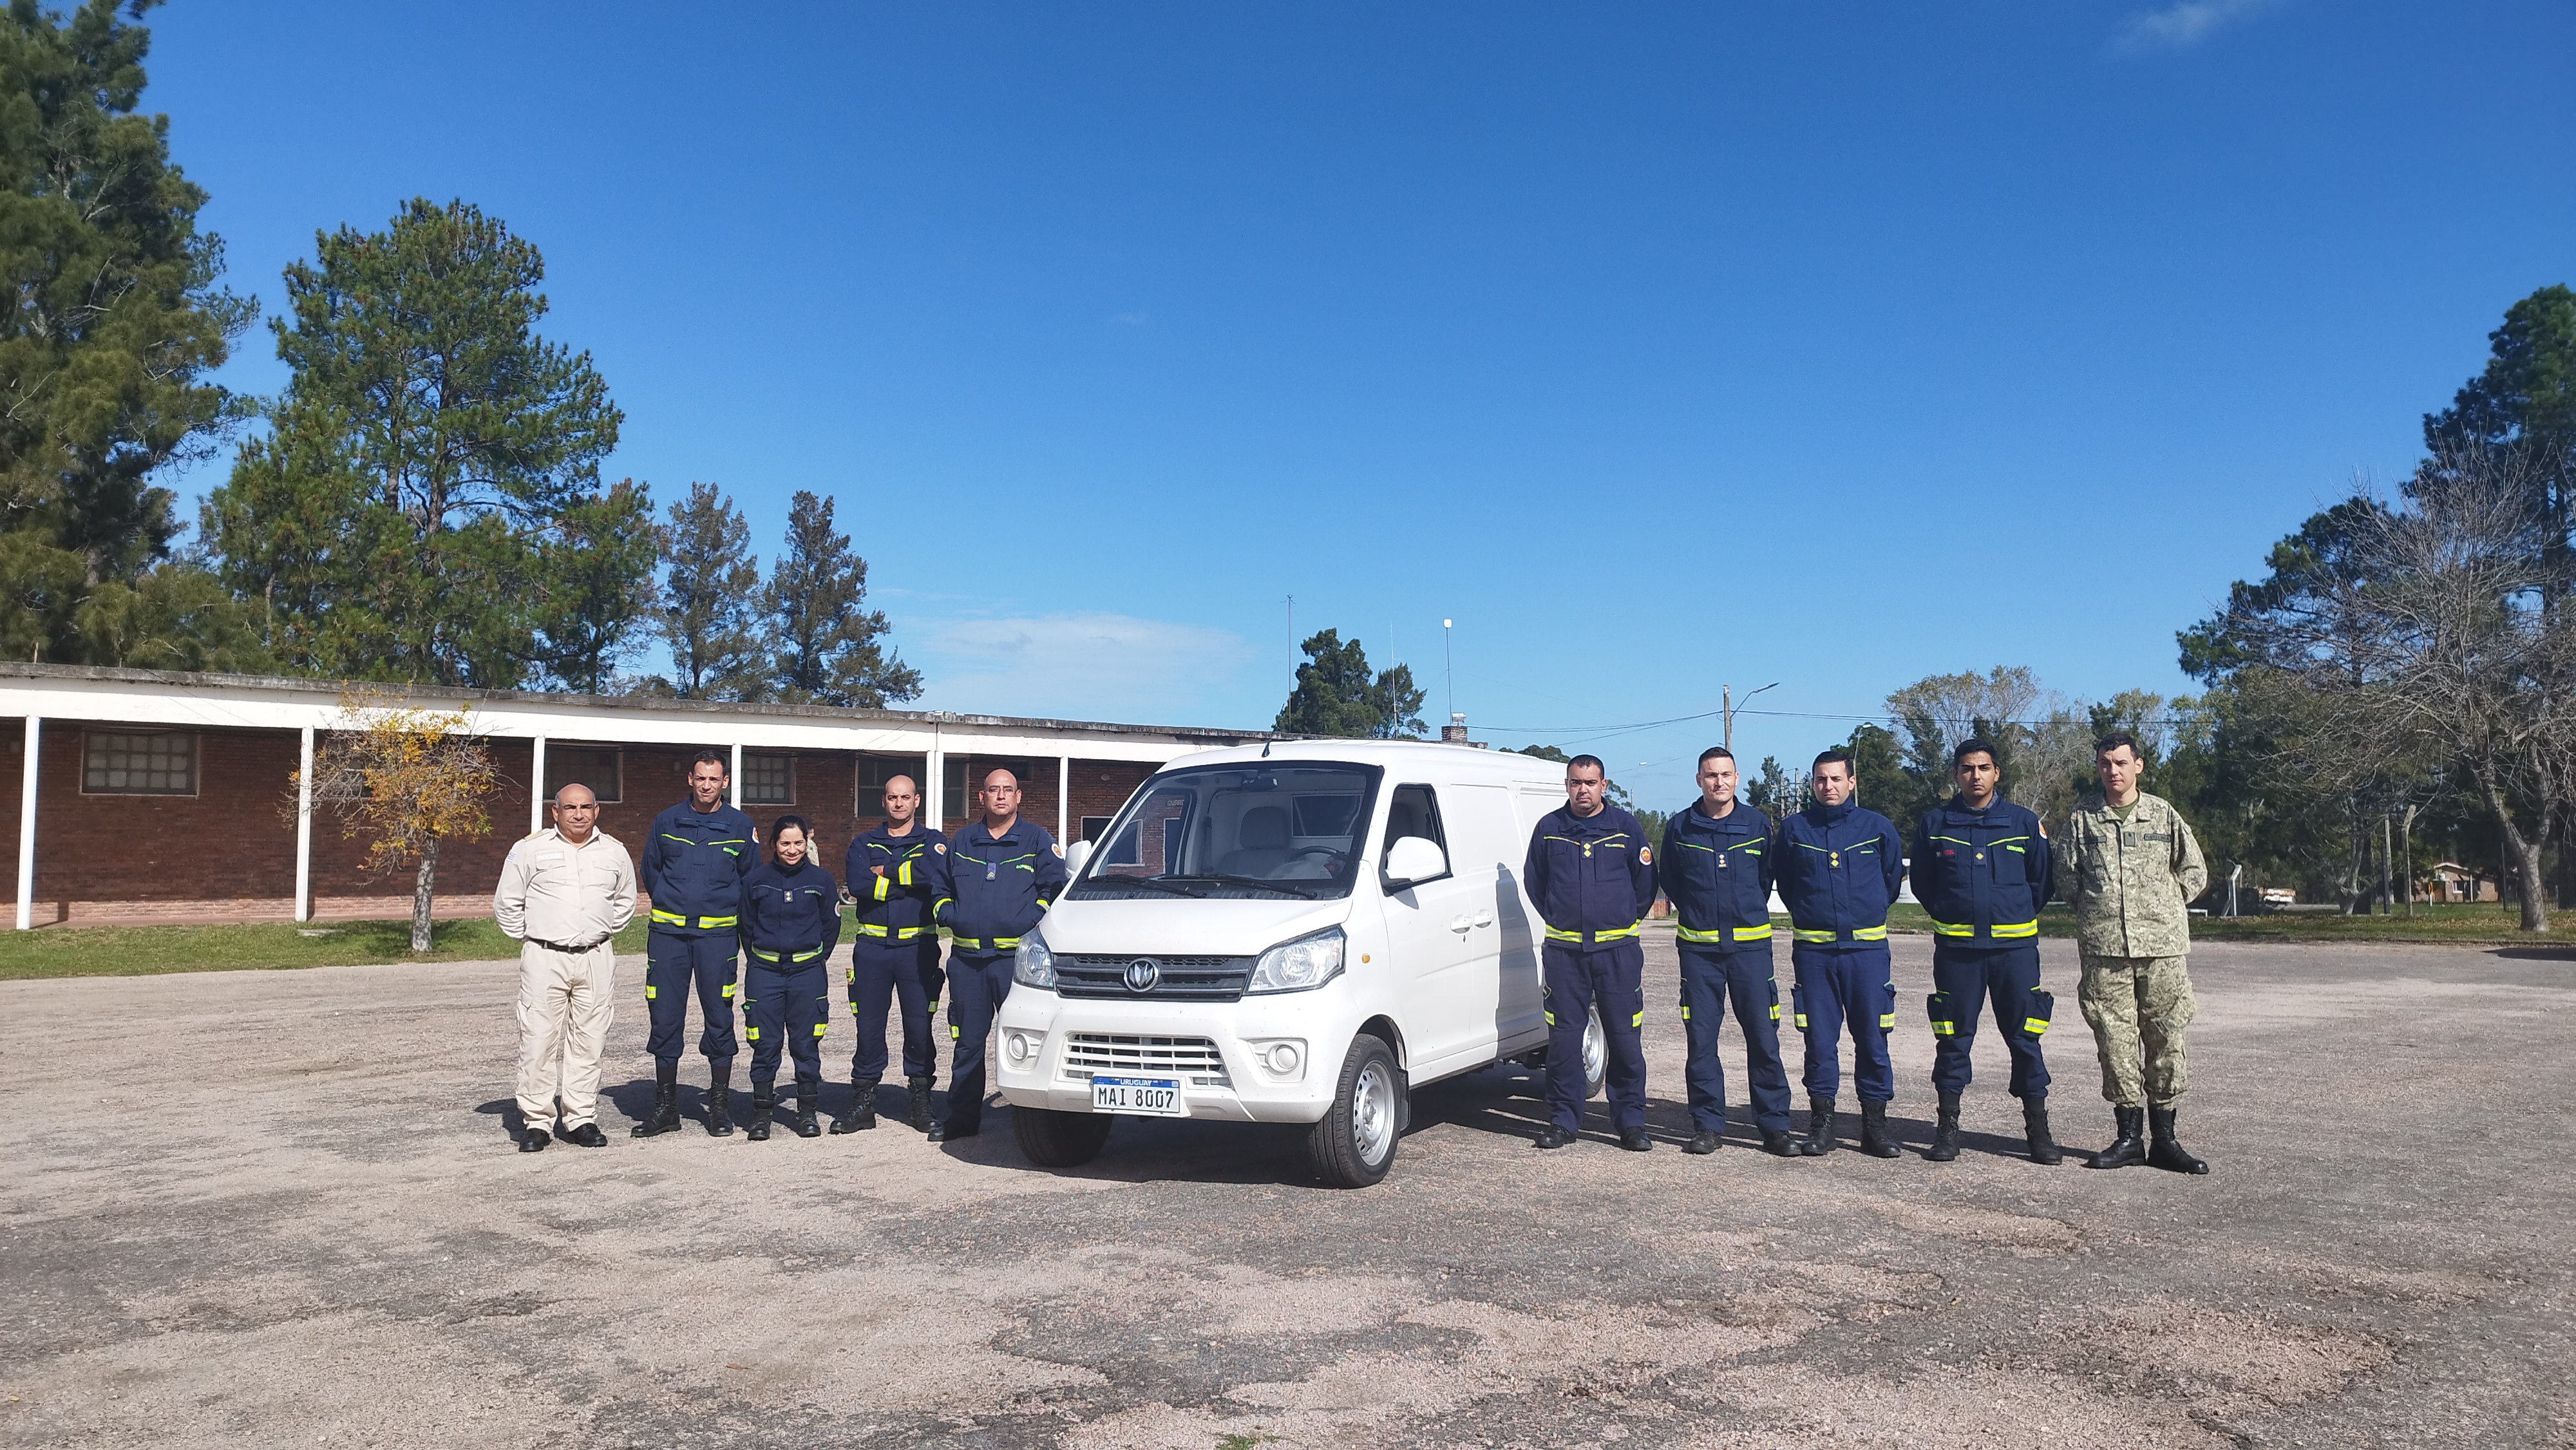 IMG_20230511_133935-Hqsi0717.jpg - El pasado jueves 11 de mayo culminó la &#034;Capacitación para bomberos sobre manejo de incidentes relacionados con la movilidad eléctrica&#034; en donde se capacitaron a 25 bomberos en la Base Aérea de Santa Bernardina del departamento de Durazno. Esta capacitación es la continuación del primer curso regional que organizó la plataforma MOVE del Programa de la Naciones Unidas para el Medio Ambiente a finales de 2022 en Paraguay, donde participaron y se formaron dos bomberos instructores de Uruguay.